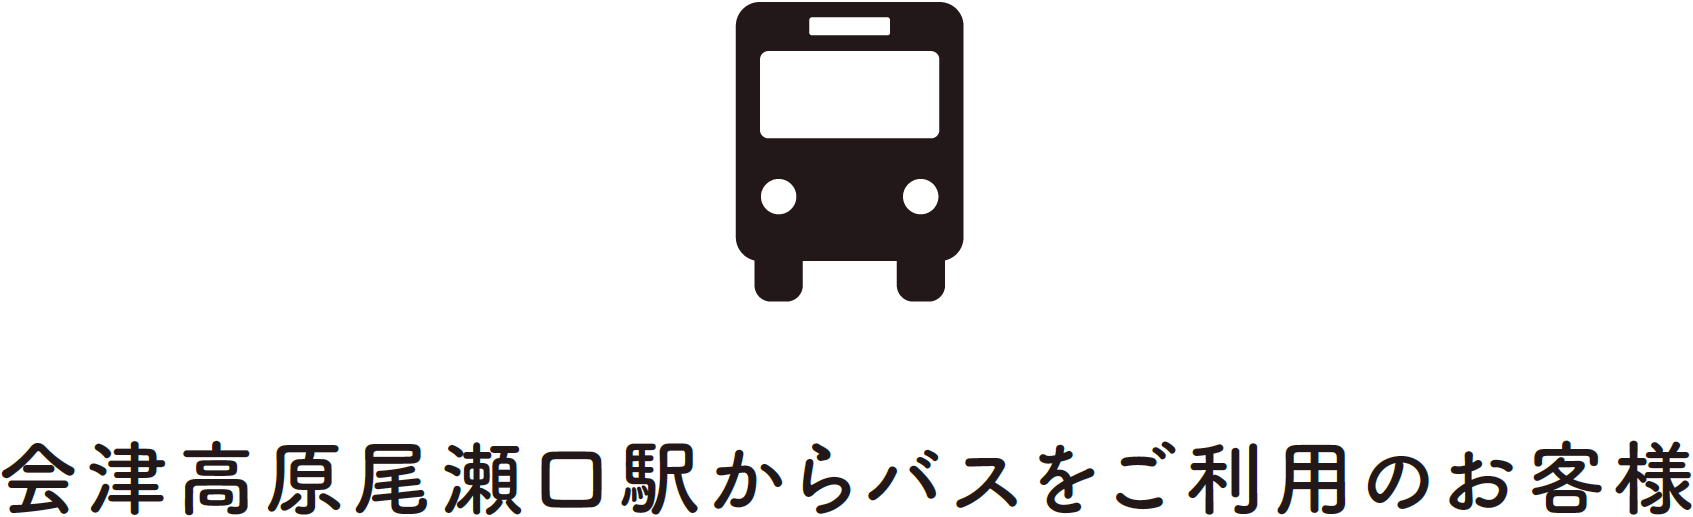 会津高原尾瀬口駅からバスをご利用のお客様